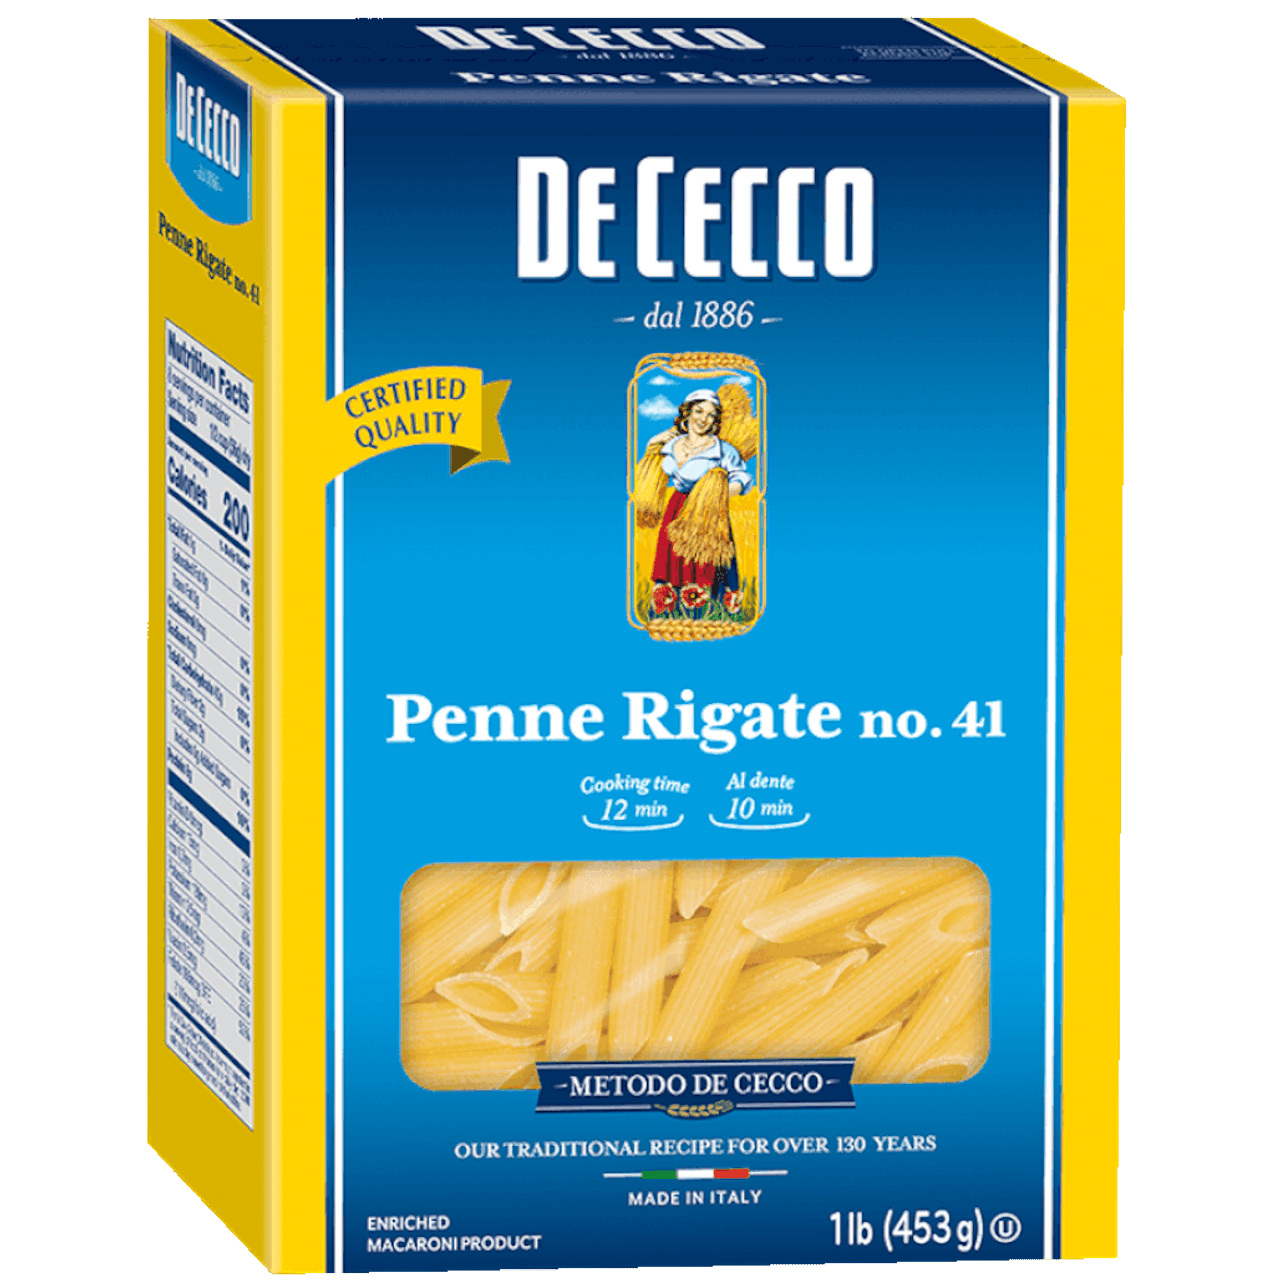 Barilla Mini Penne Pasta, 16 oz